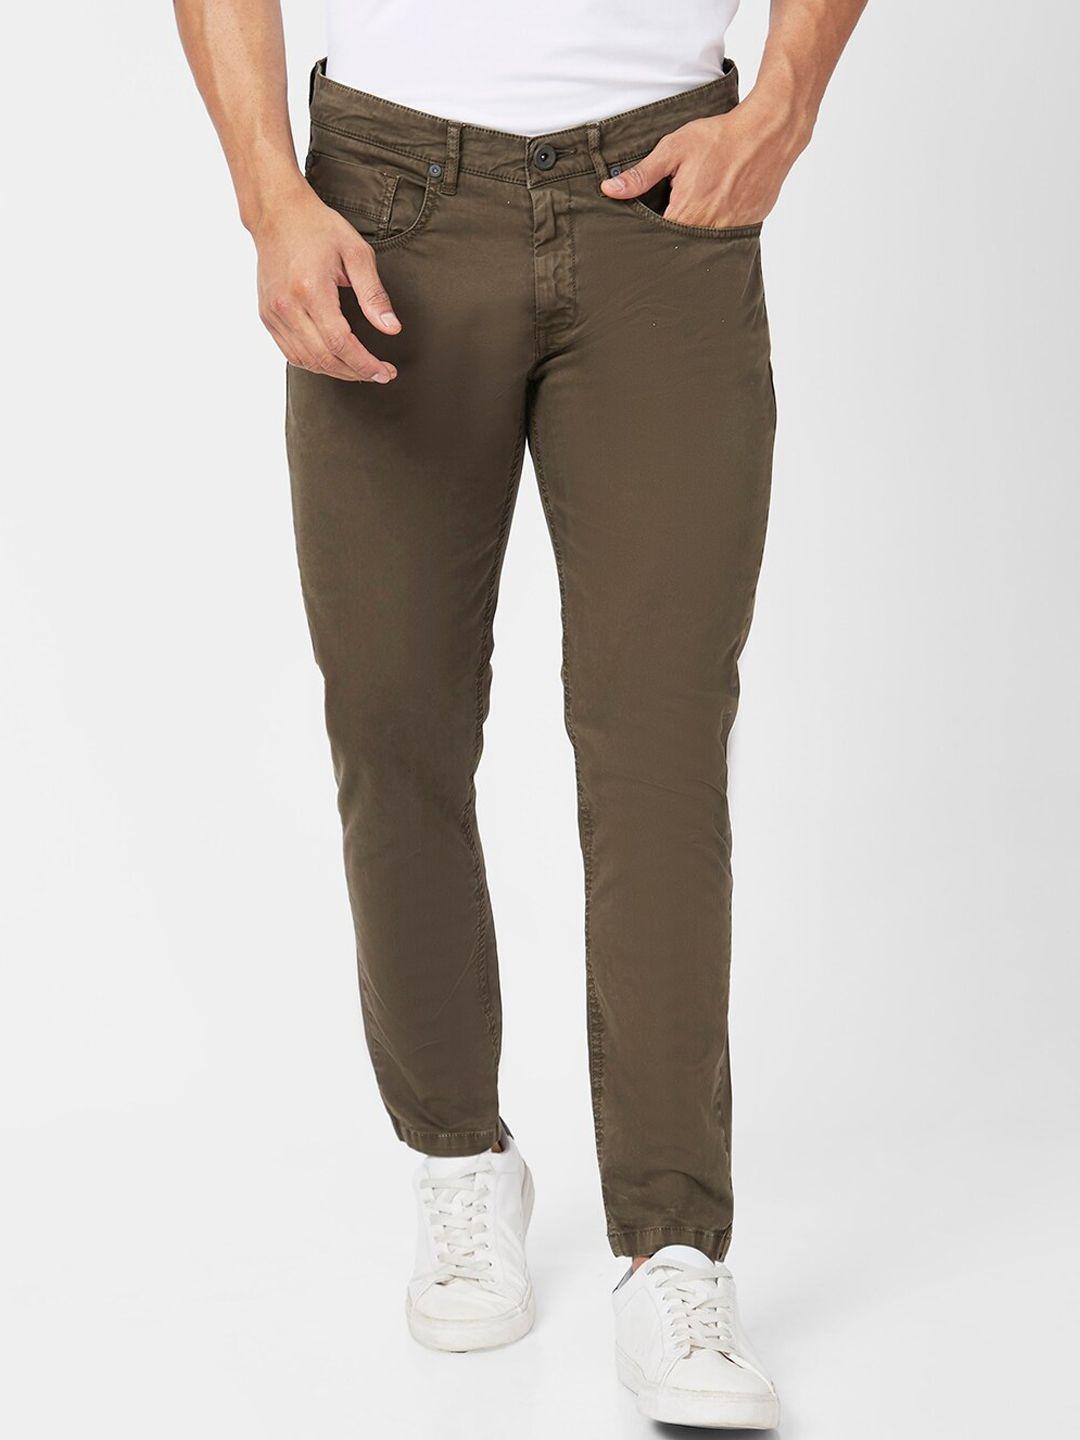 spykar-men-slim-fit-mid-rise-cotton-trousers